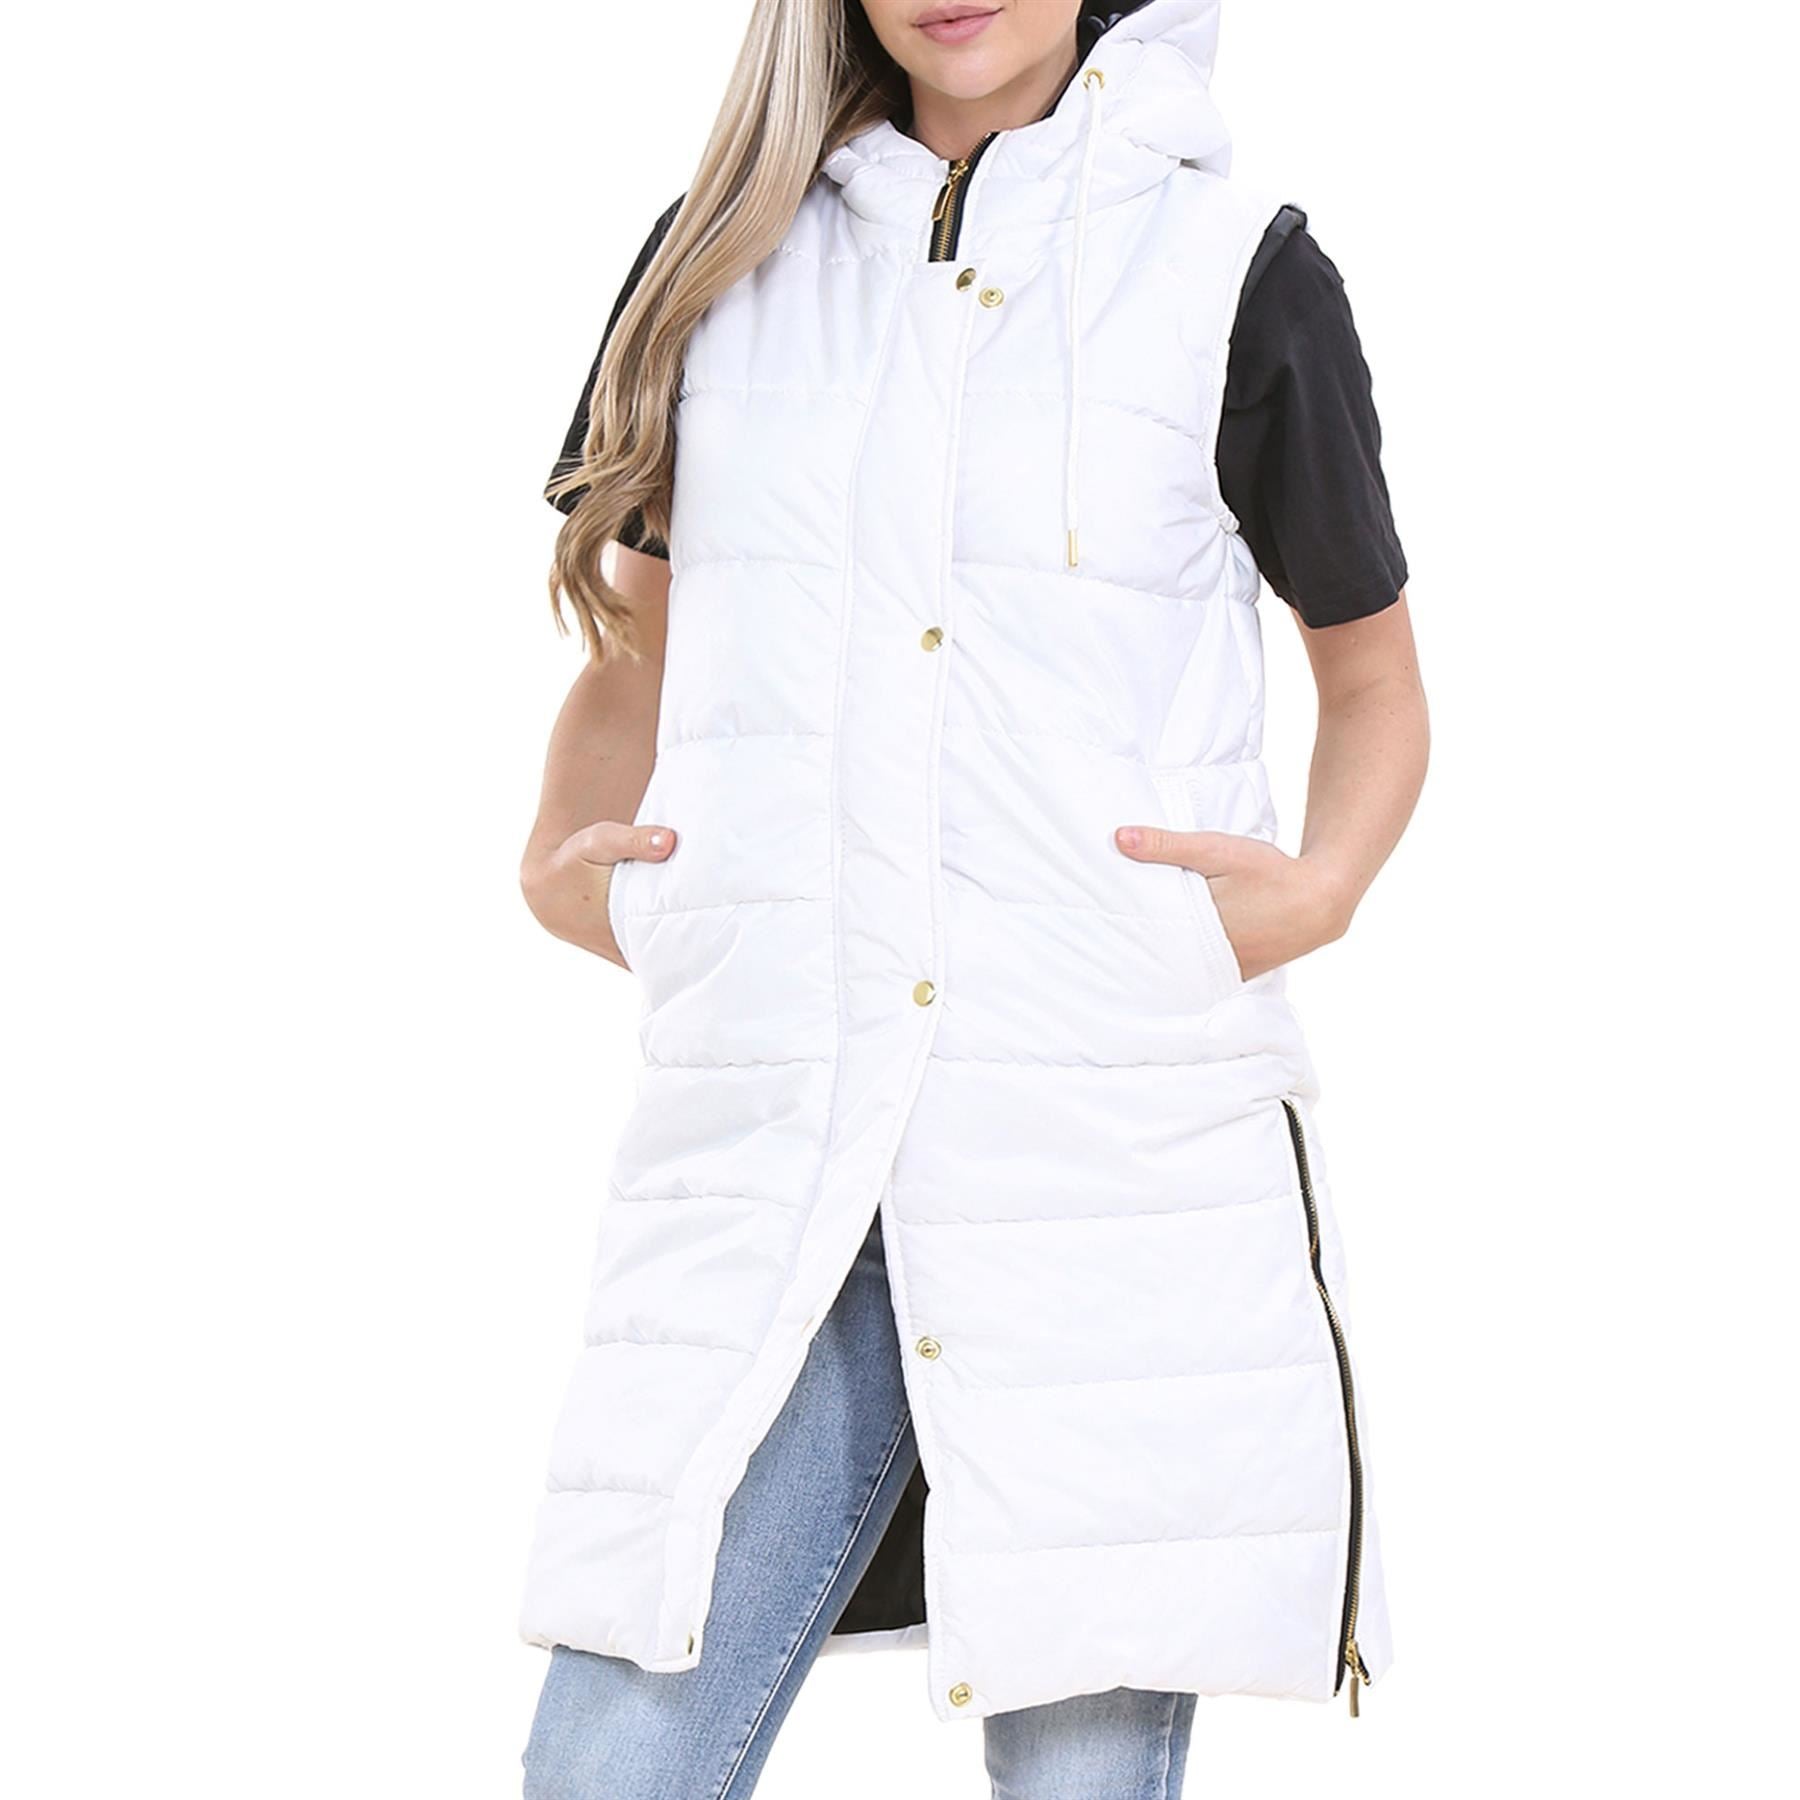 Ladies Oversized Gilet Long Line Style White Jacket Long Sleeveless Fashion Coat